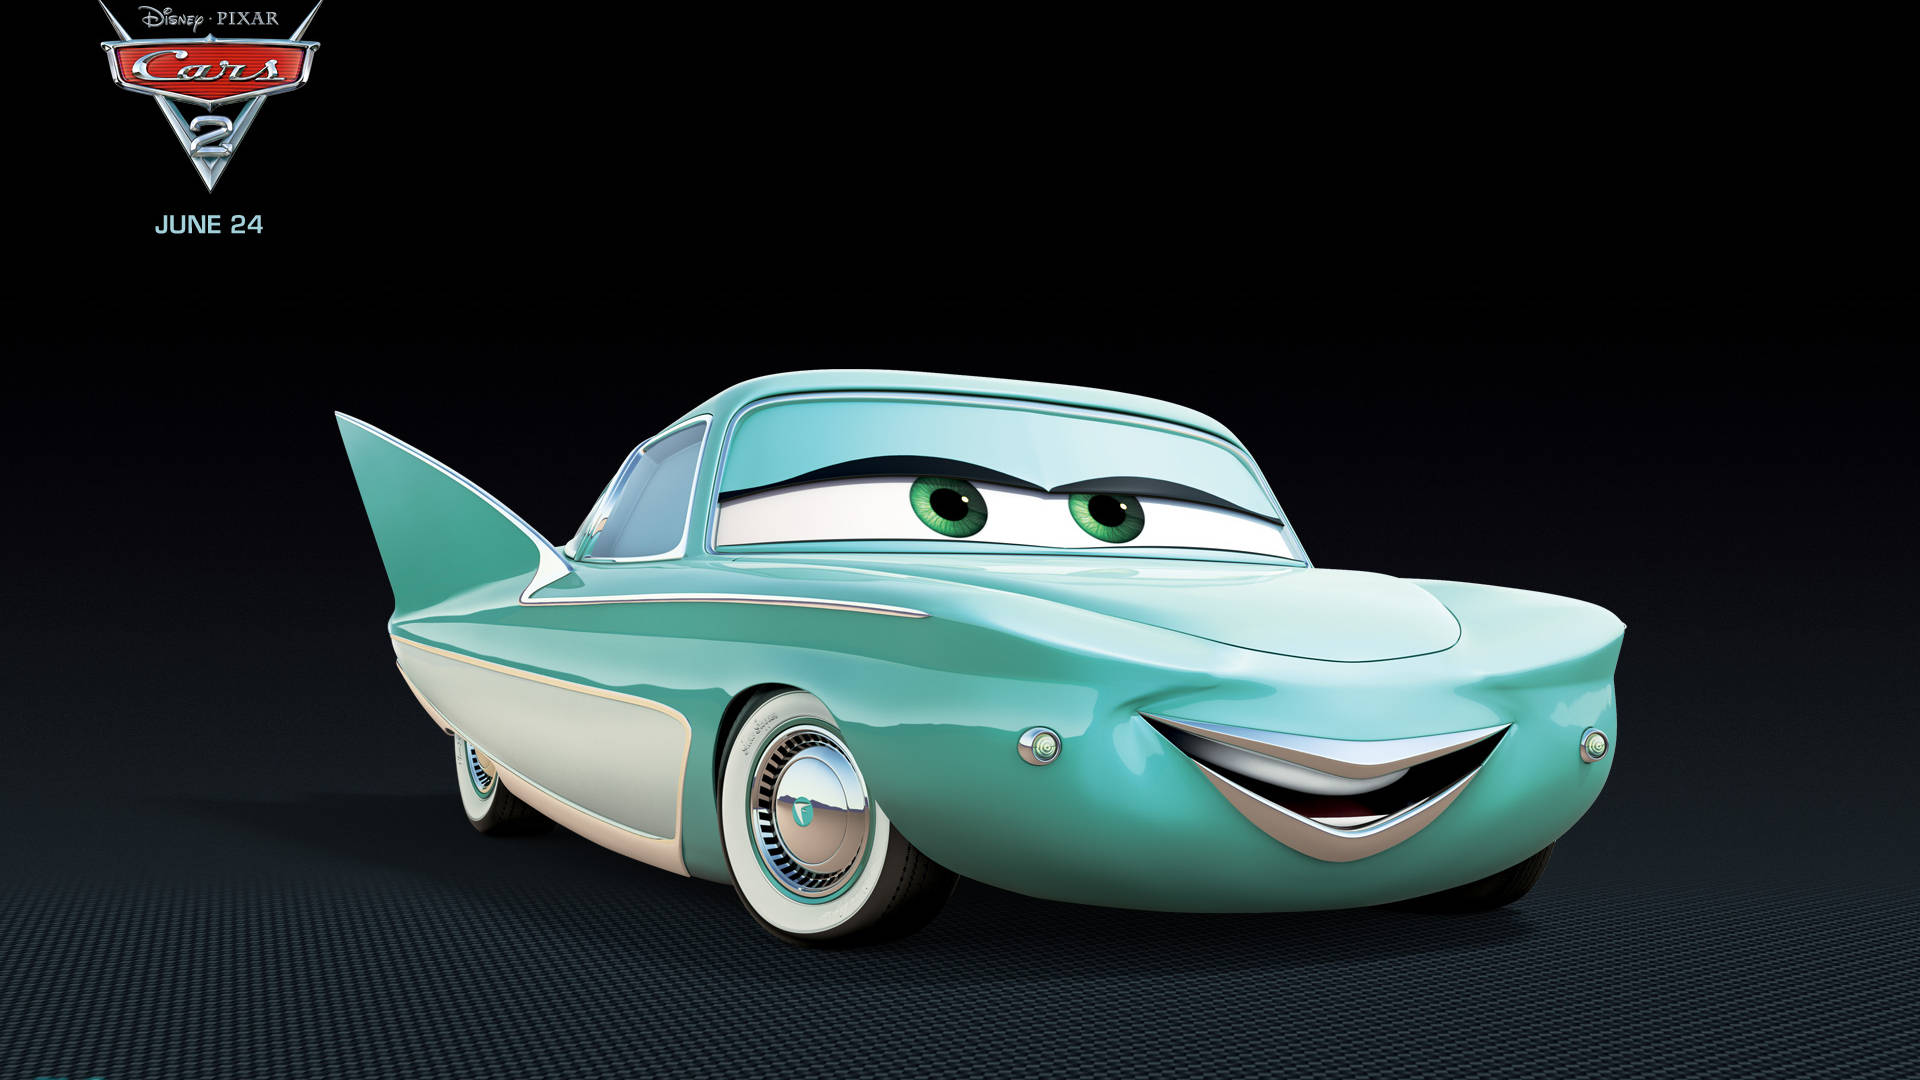 Flo fra Pixar's Biler Wallpaper